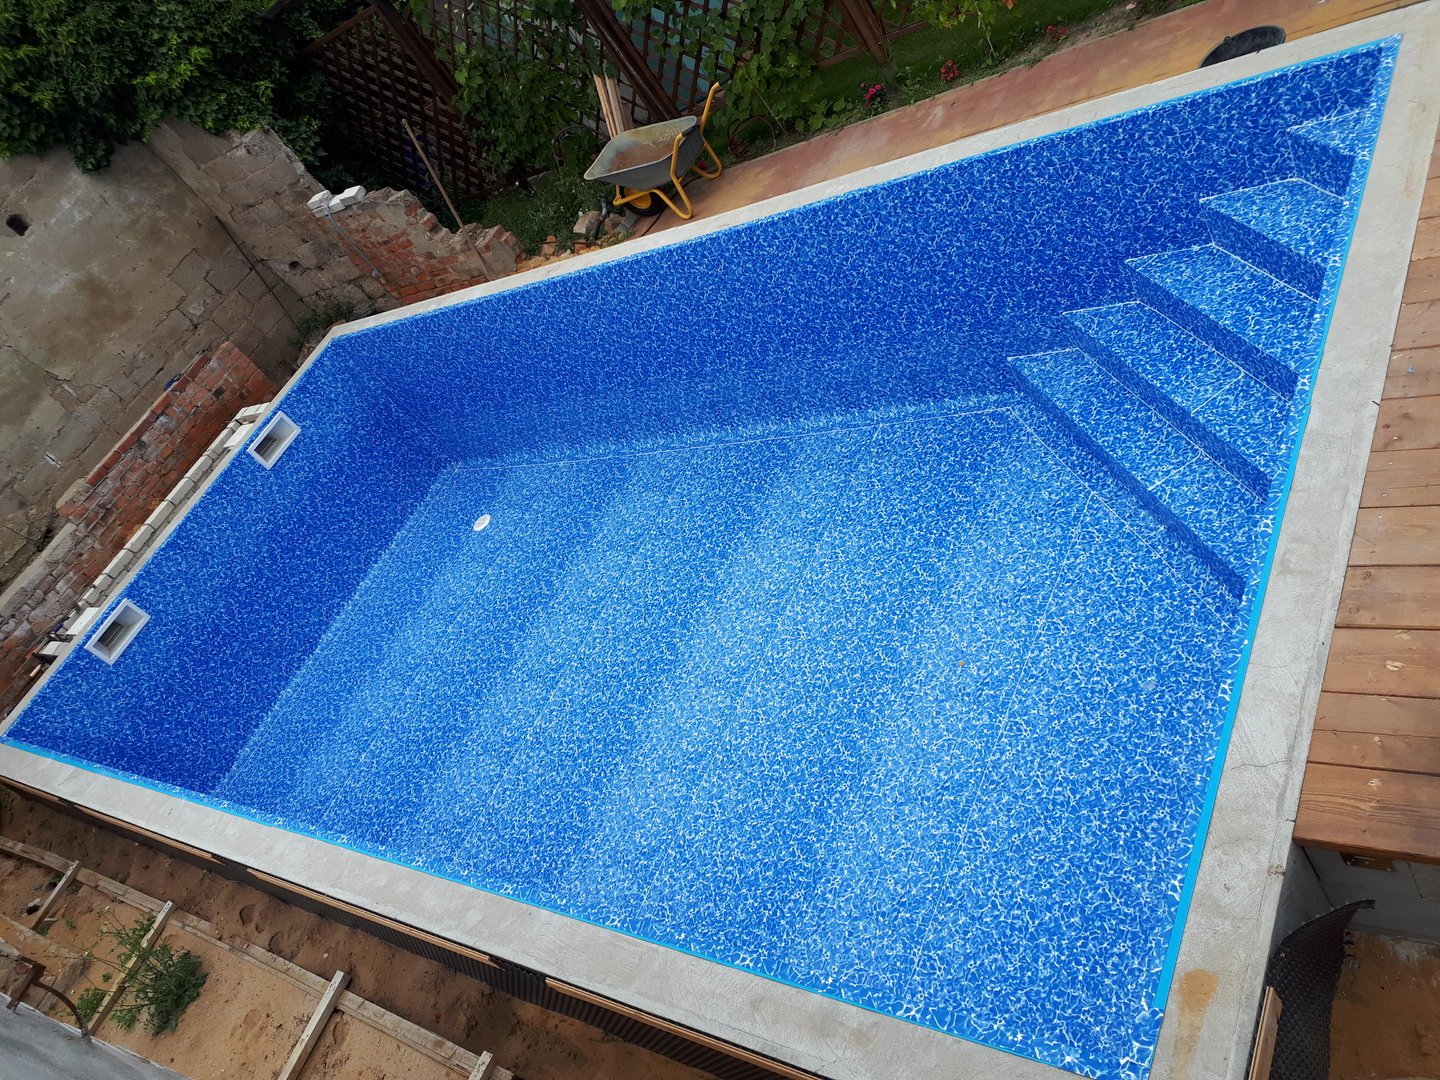 Poolfolie Schwimmbad schweißen Folienschweißung Pool Teich vor Ort Preis pro m² 